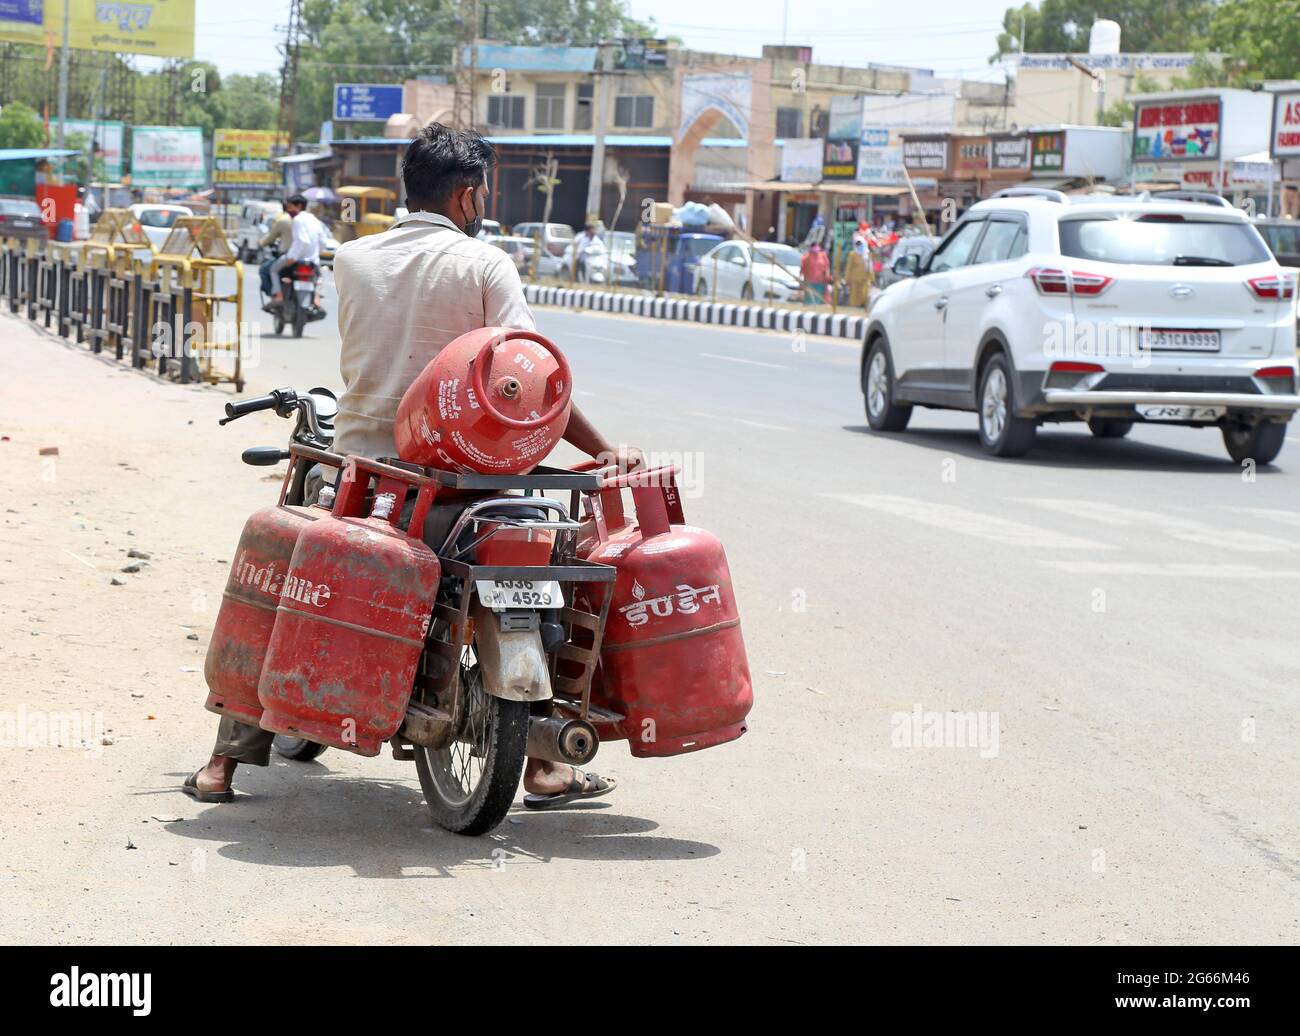 Beawar, Rajasthan, Indien, 3. Juli 2021: Ein Arbeiter trägt Treibgasflaschen auf einem Fahrrad in Beawar. Der Preis für nicht subventionierte Treibgasflaschen, die um 25.50 Rs und kommerzielle Treibgasflaschen um 84 Rs angefahren wurden, ist wirksam. Kredit: Sumit-Samarwat/Alamy Live Nachrichten Stockfoto